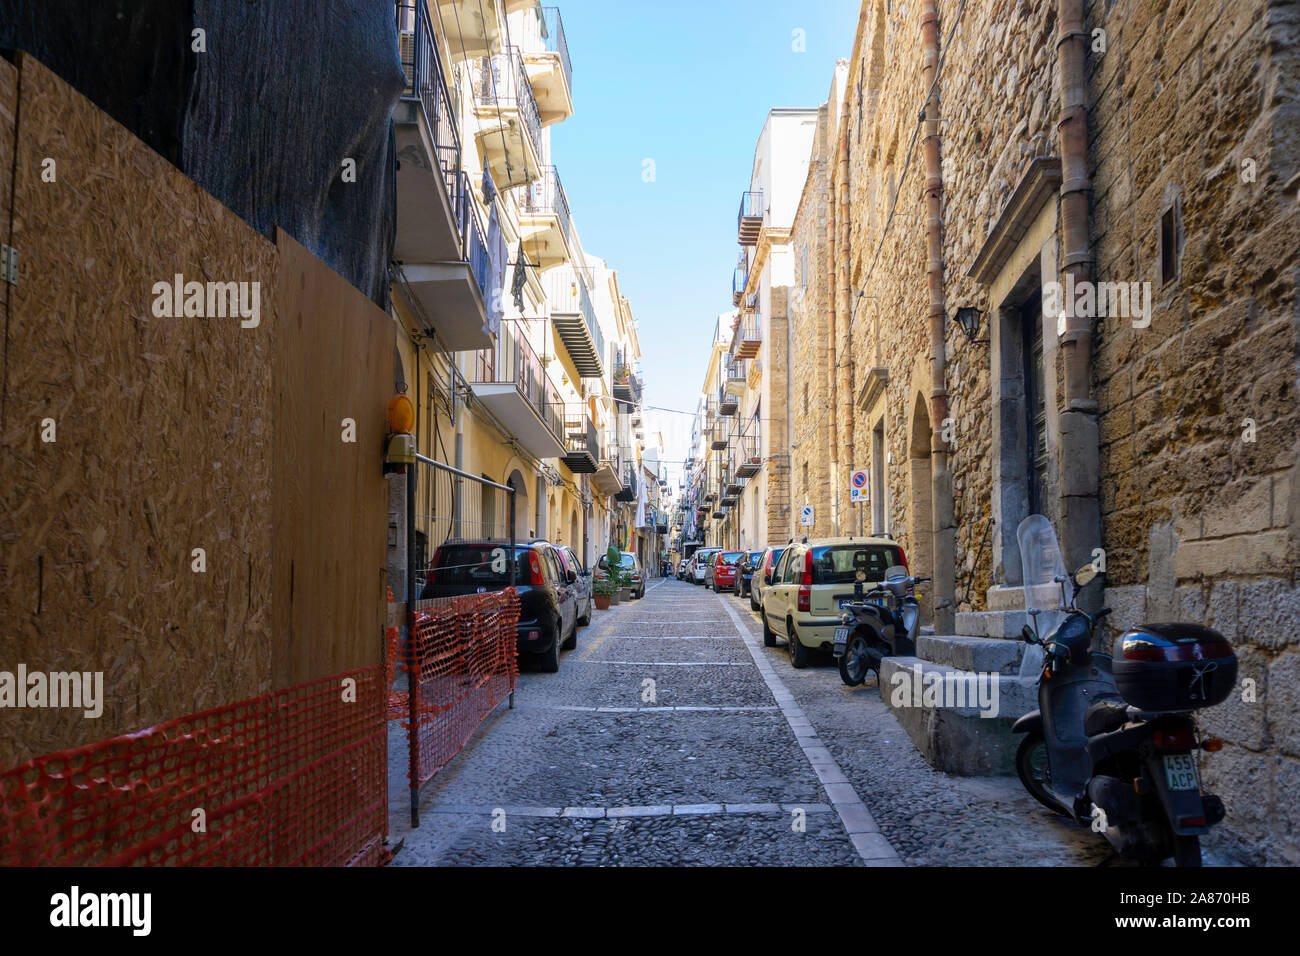 Einer der vielen bunten Seitenstraßen in Celafú, Sizilien, Italien, dieses Wohngebiet mit Kleidung lüften auf Balkonen. Stockfoto